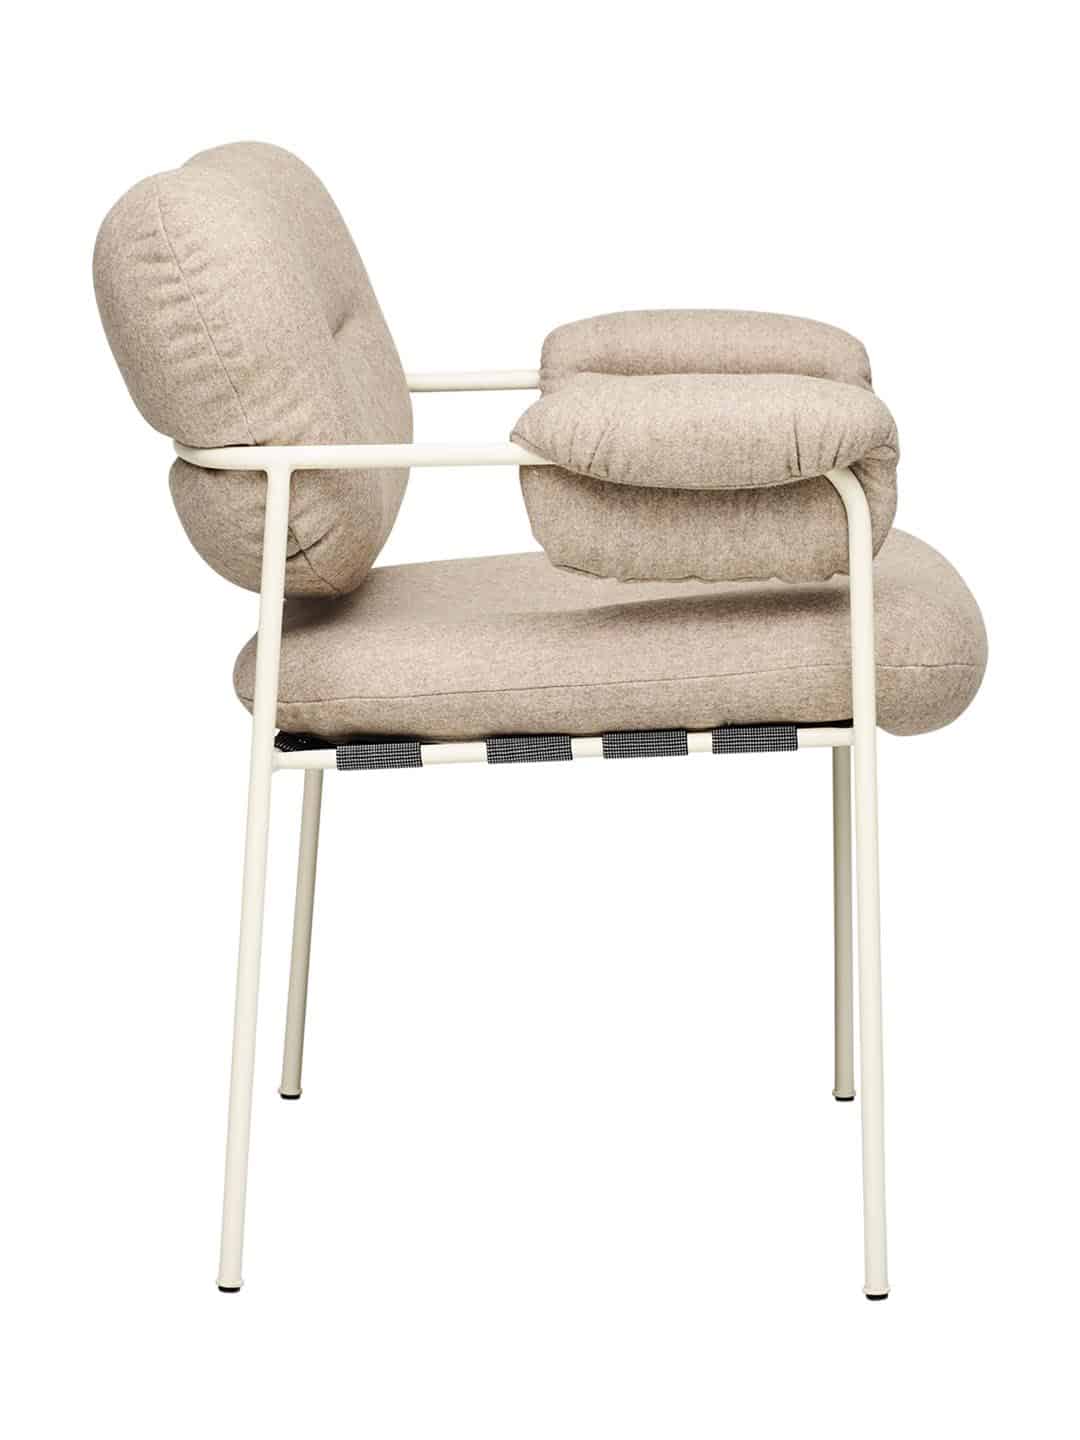 Классический стул с подлокотниками Spisolini песочного цвета